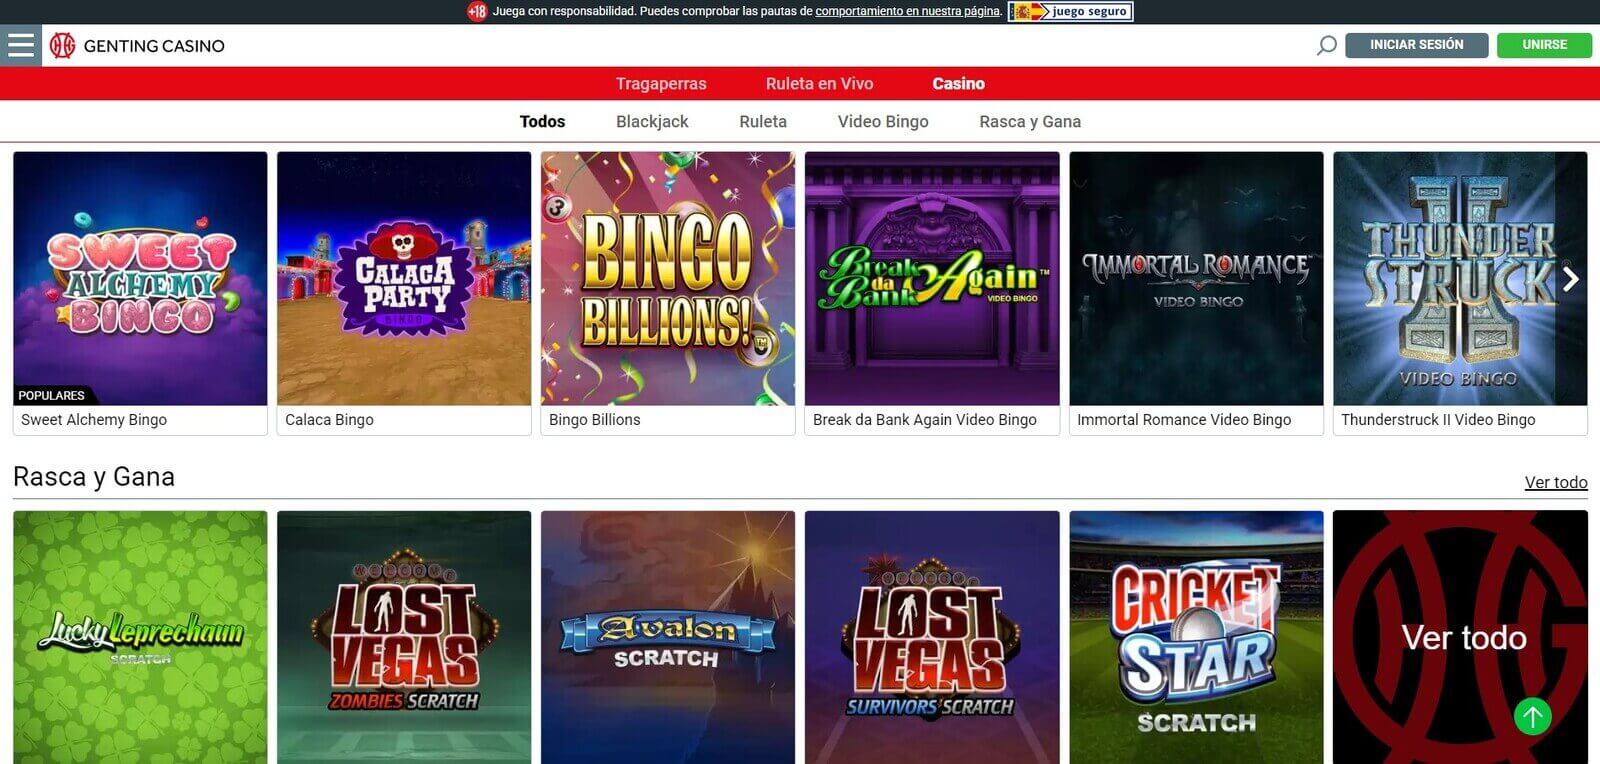 Juegos de Genting Casino online en España